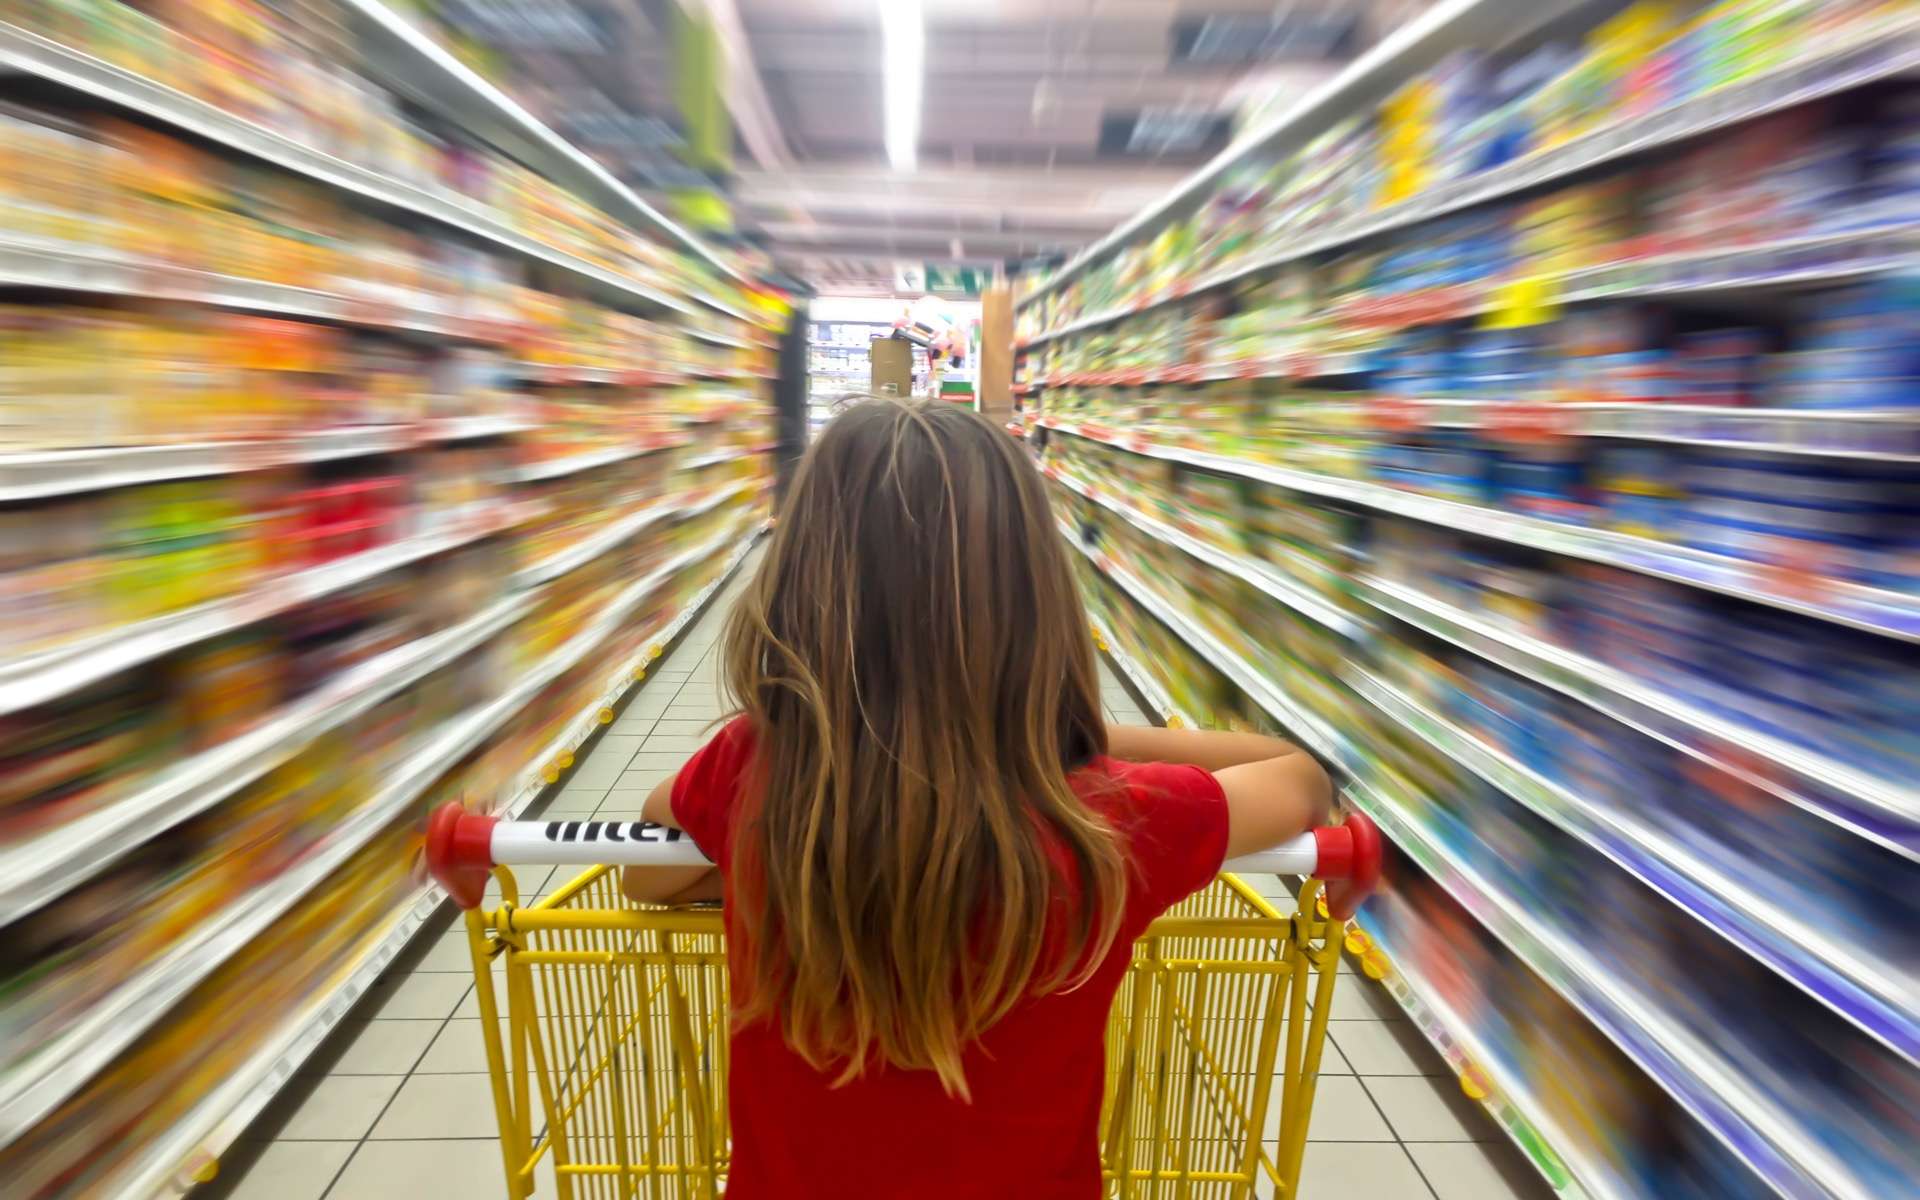 Additifs alimentaires : faut-il faire peur pour vendre des produits bio ?